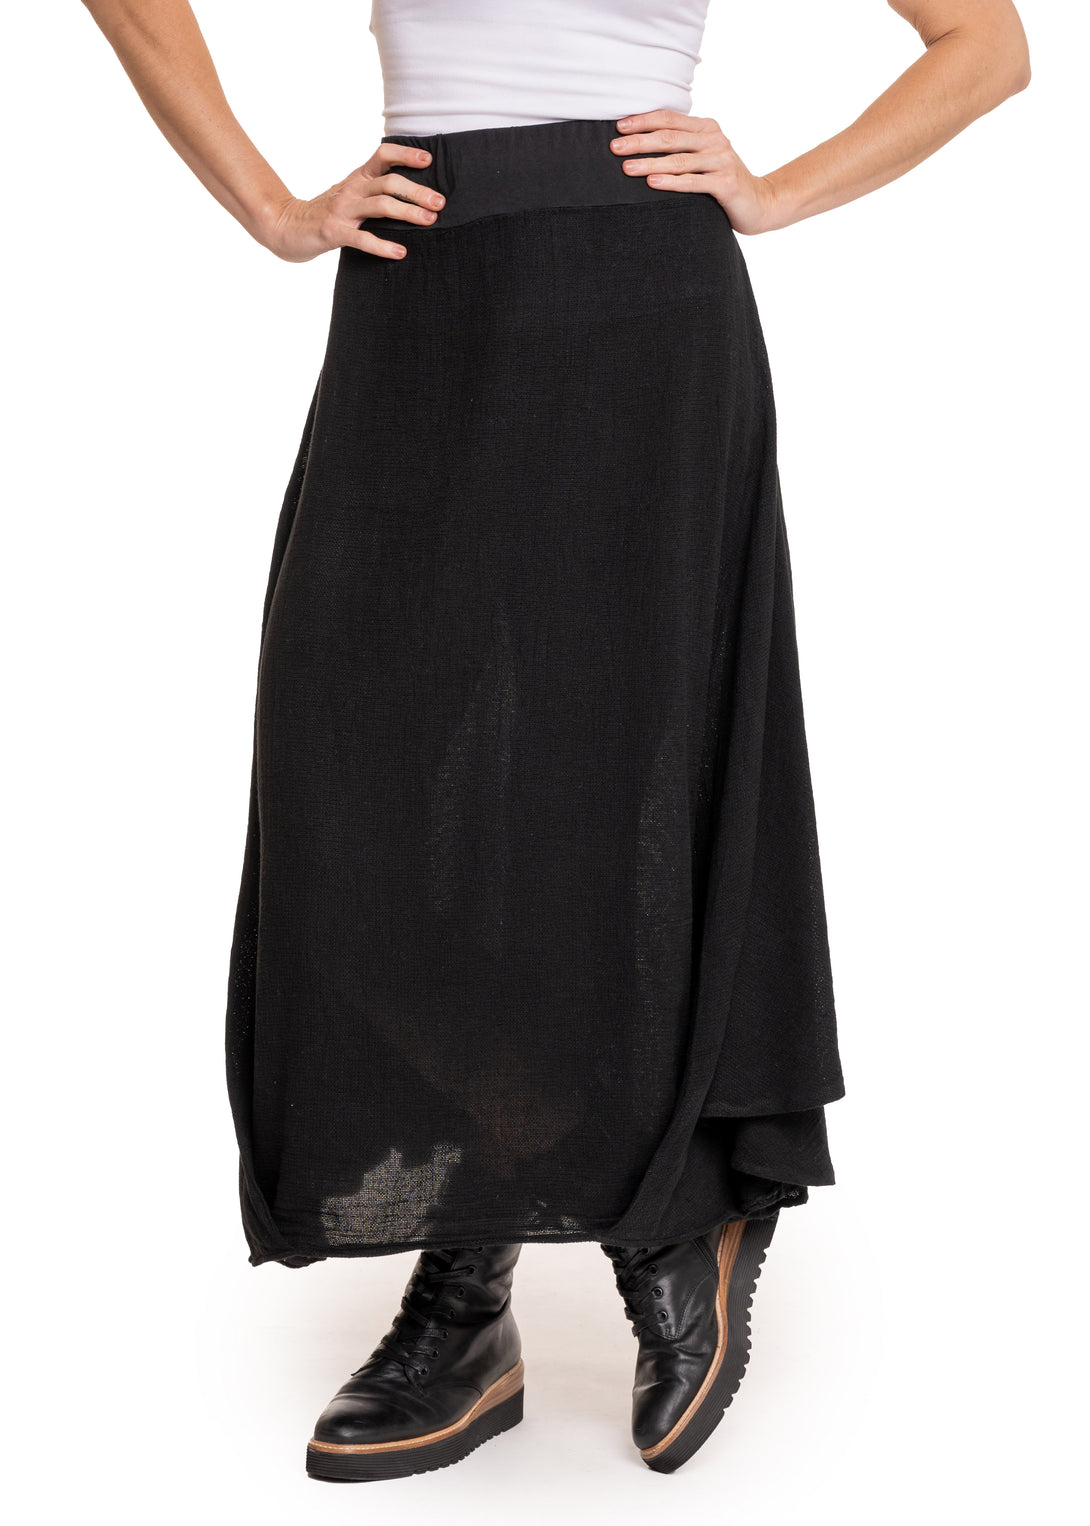 Kerrie Skirt in Onyx - Imagine Fashion